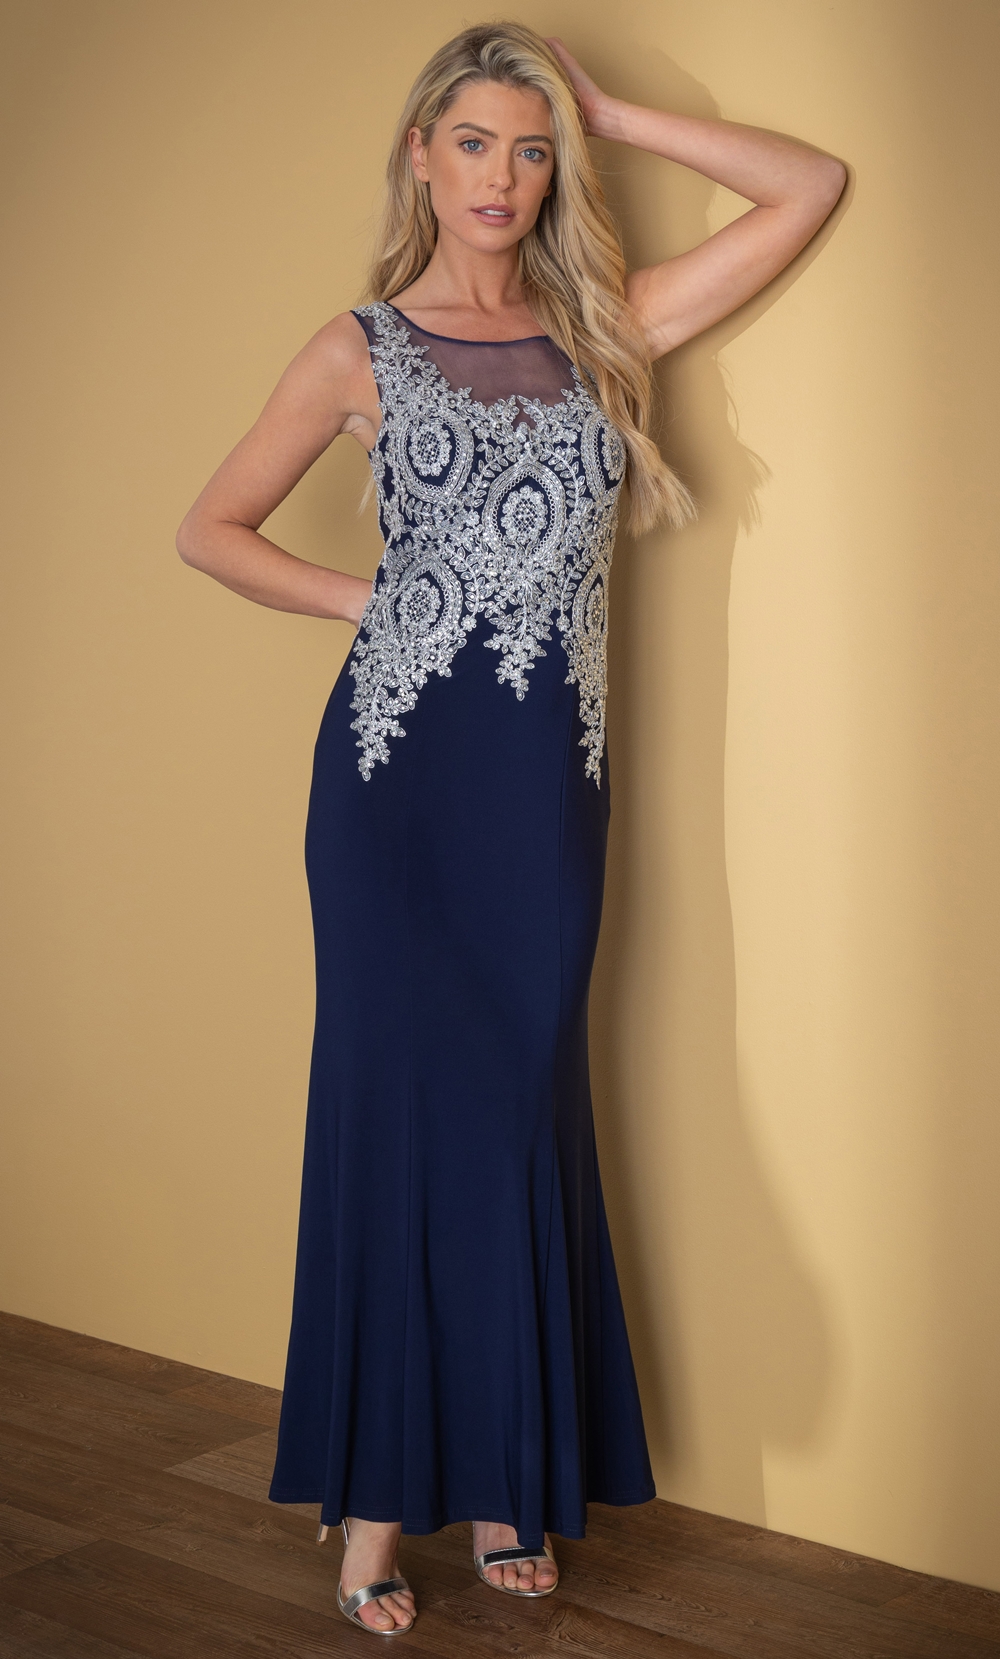 Brands - Klass Embellished Sleeveless Maxi Evening Dress Midnight/Silver Women’s